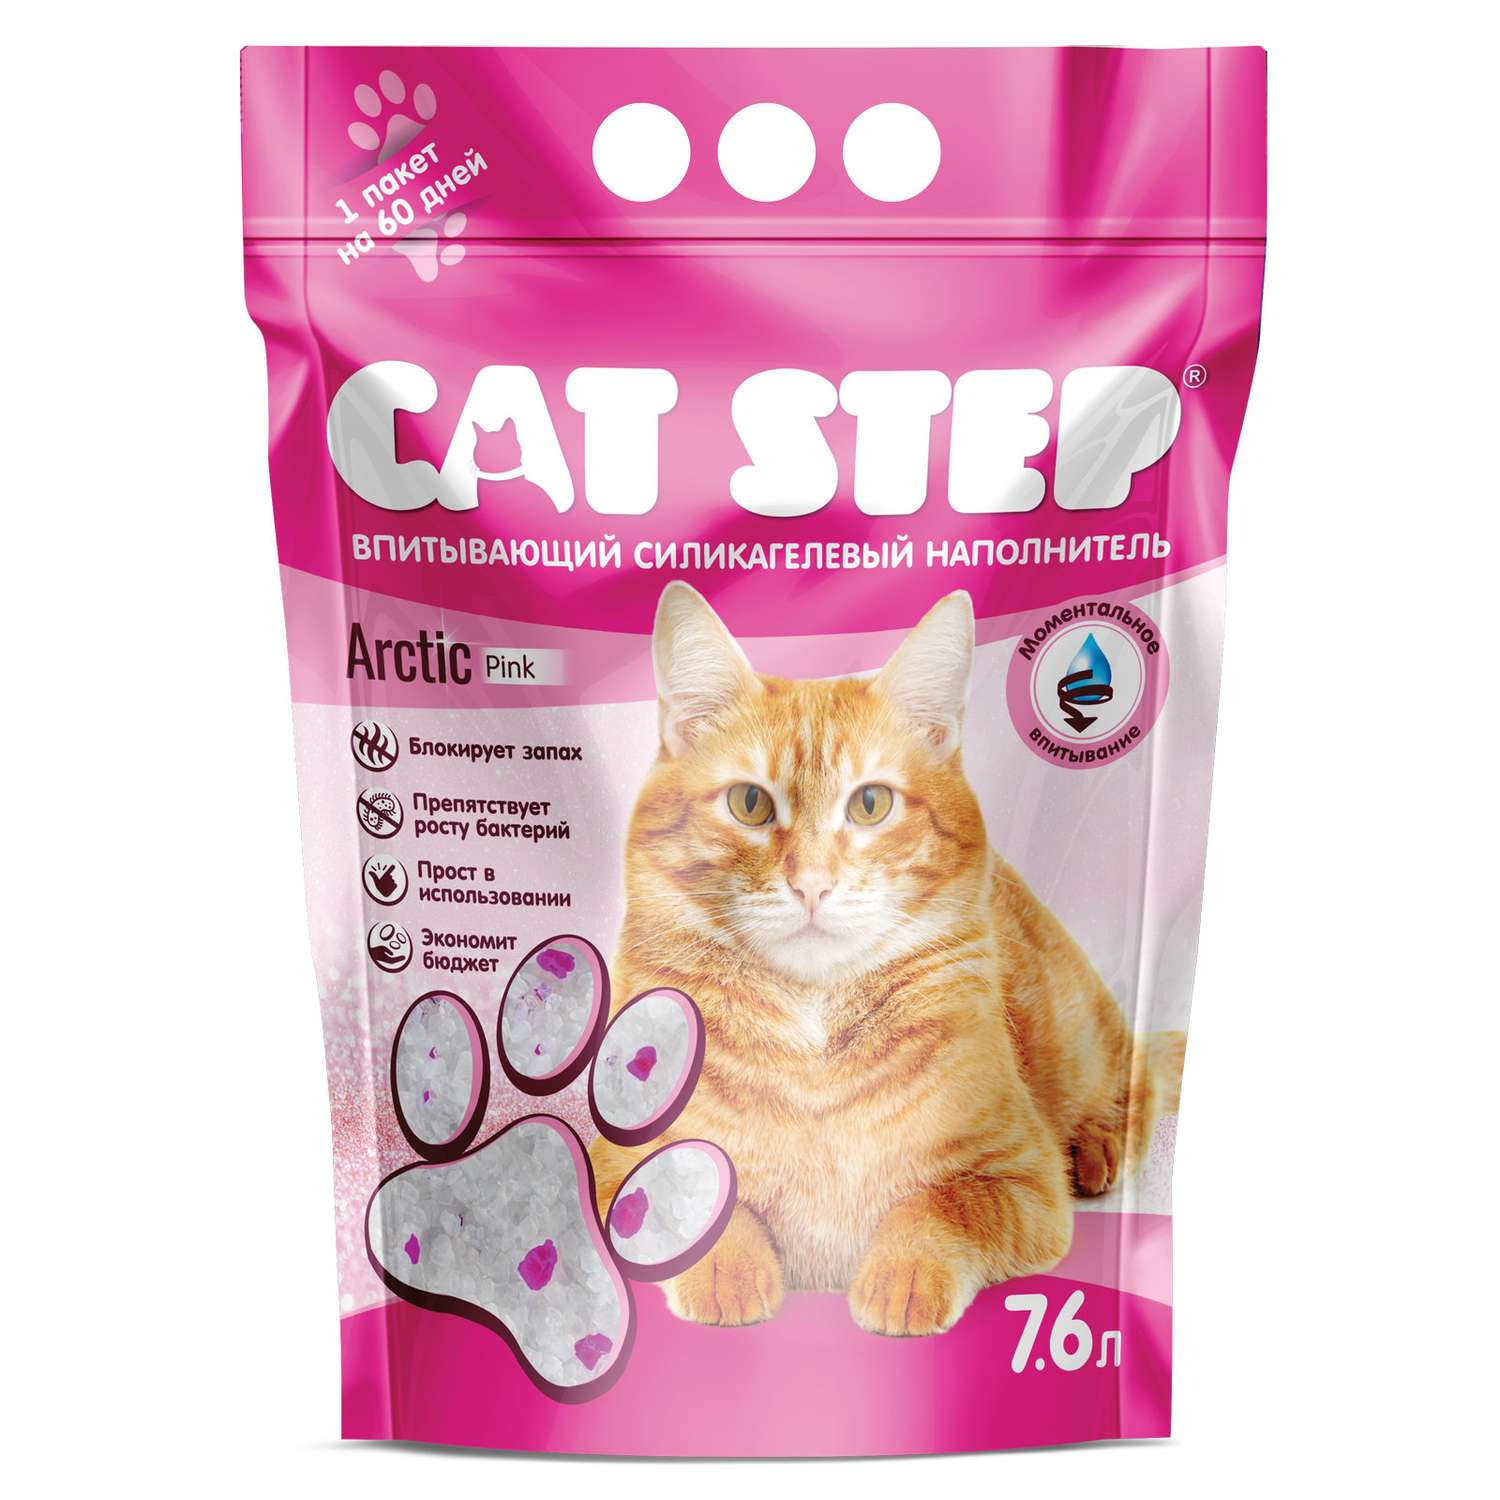 Наполнитель для кошек Cat Step Arctic Pink впитывающий силикагелевый 7.6л - фото 2